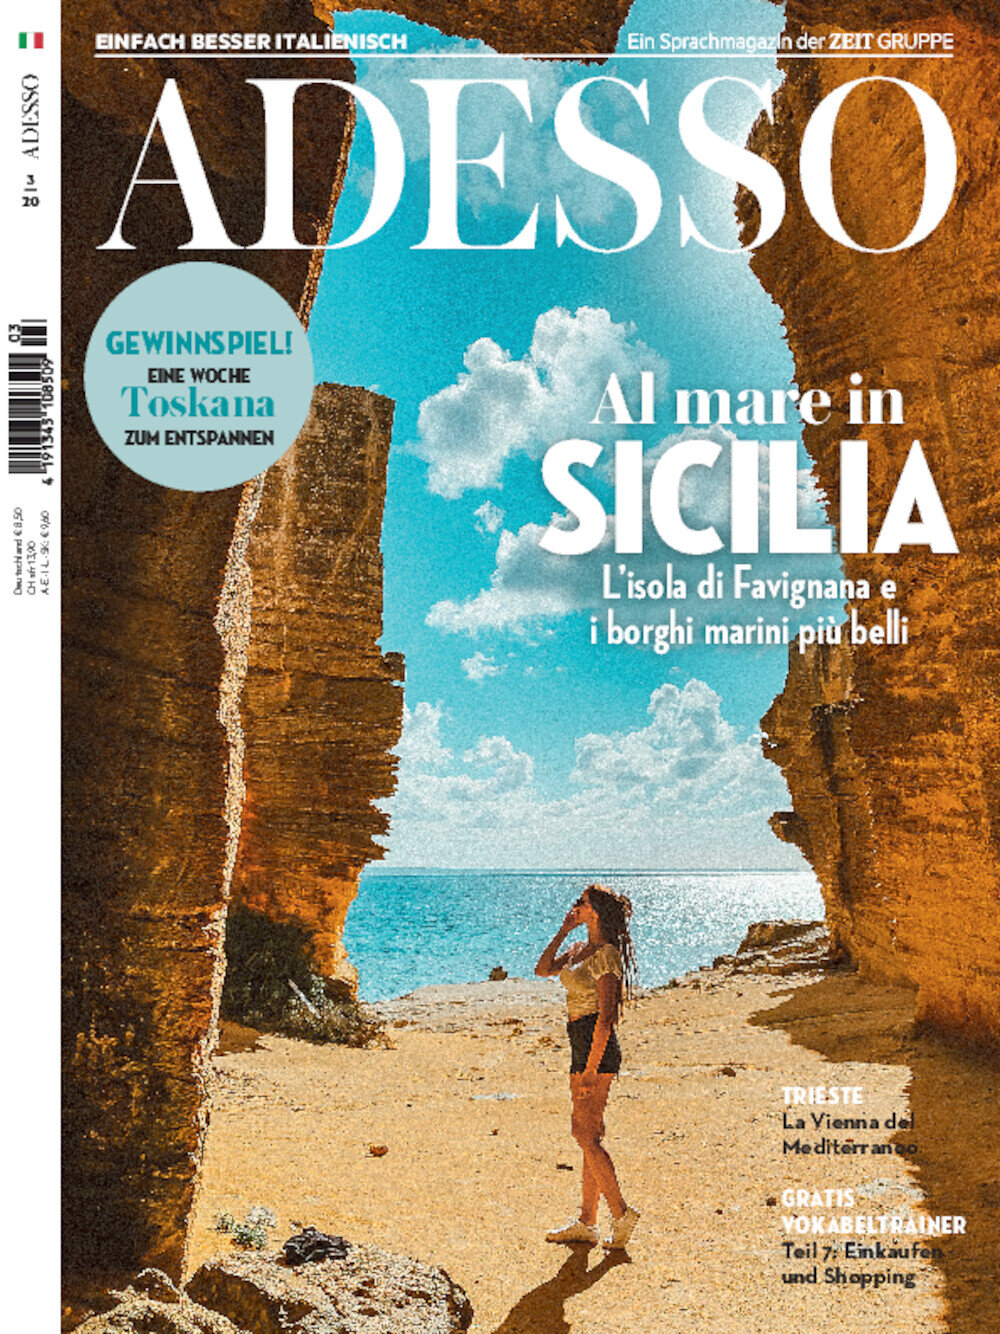 ADESSO eMagazine 03/2020